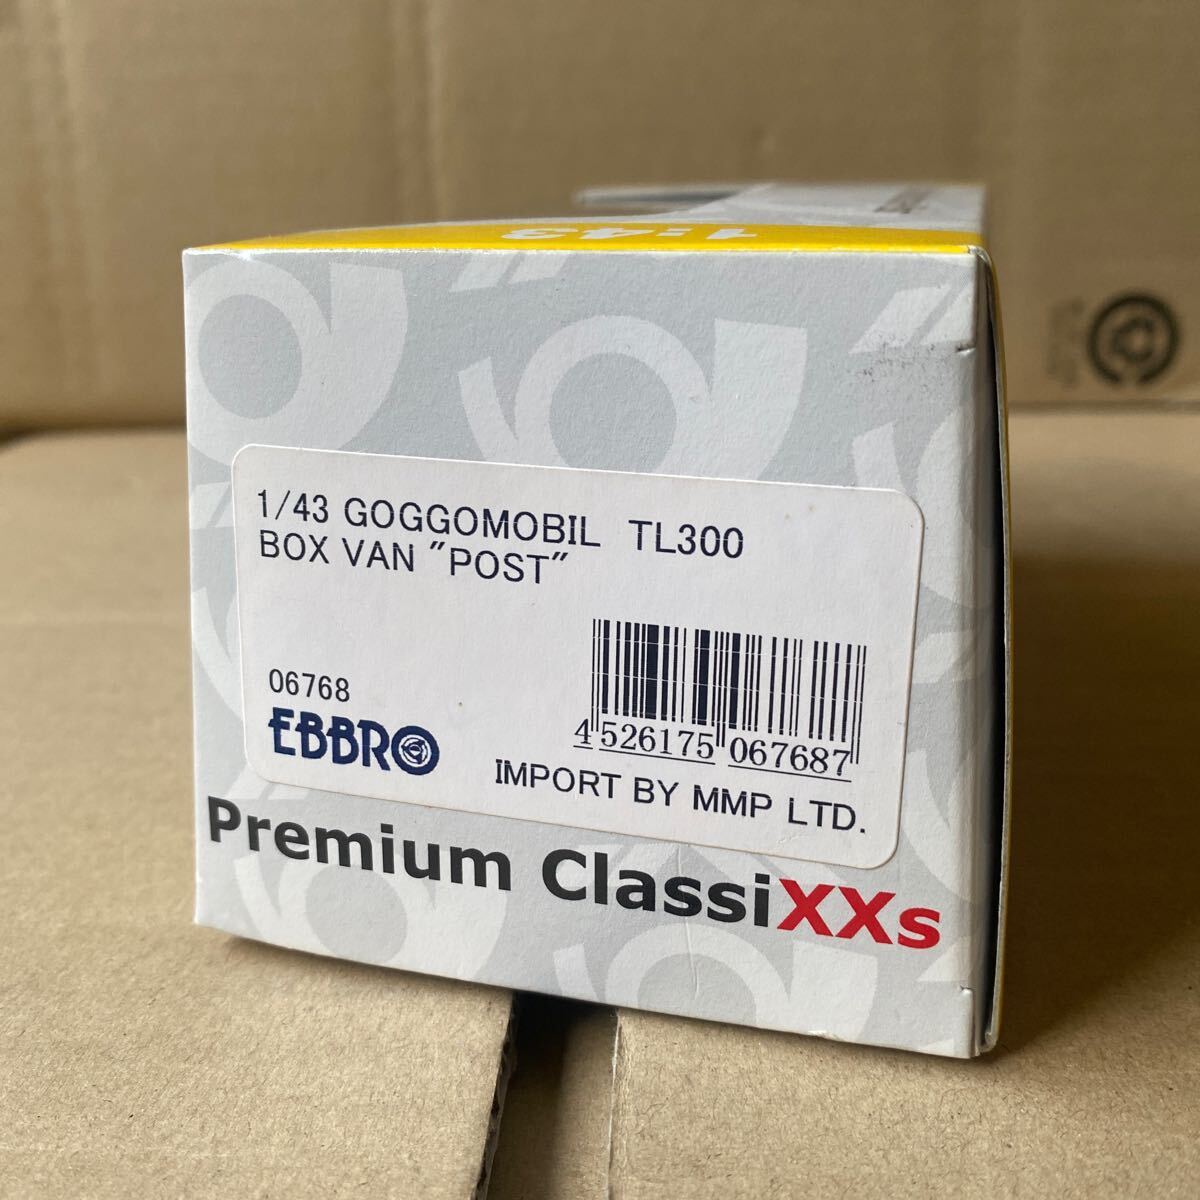 未使用 1/43 エブロ GOGGOMOBIL TL300 BOX VAN POST Premium ClassiXXs ミニカー の画像3